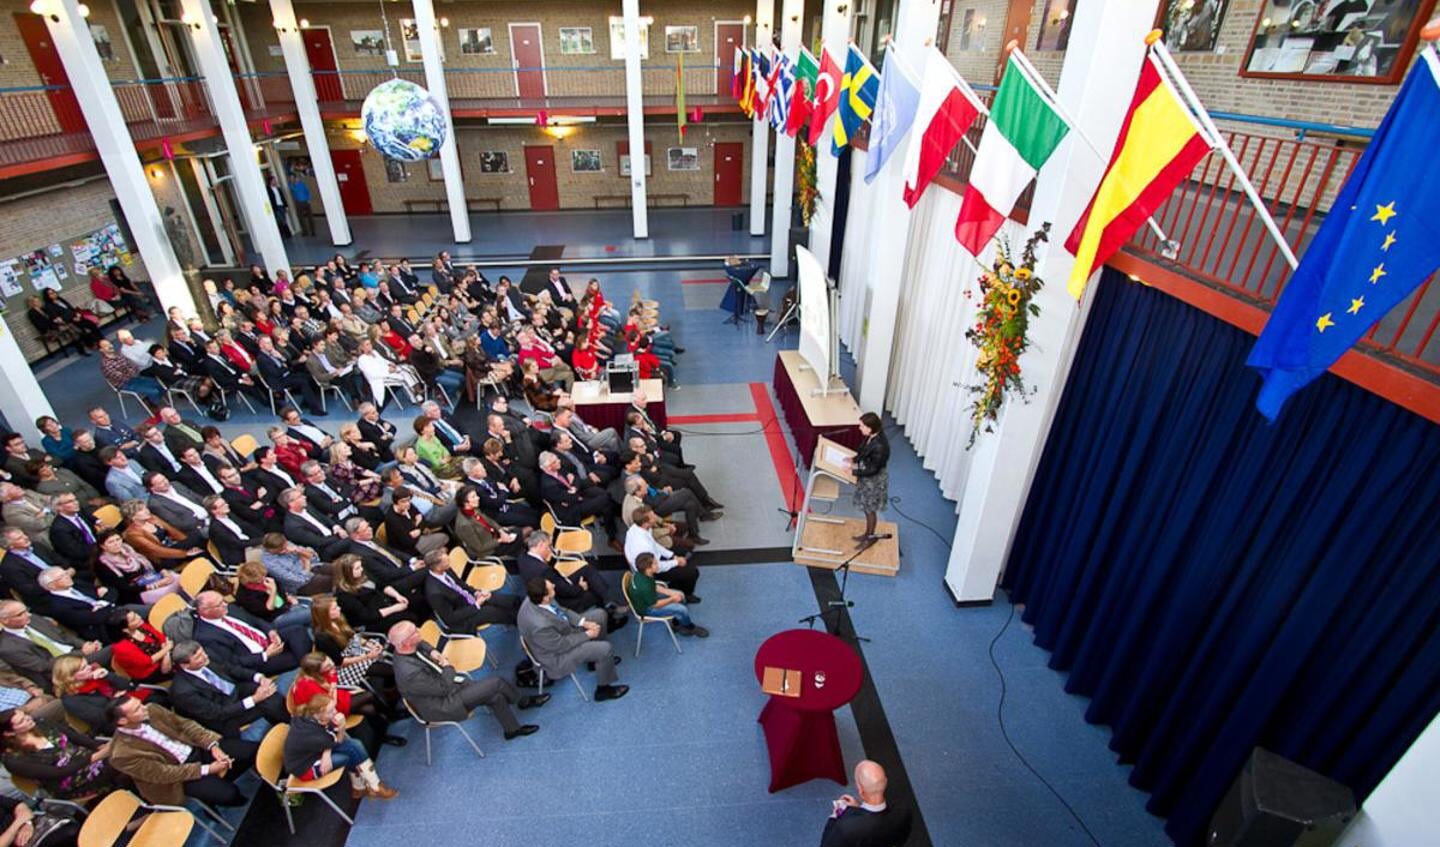 De officiële opening van de Internationale School in Breda. foto Jorgen Janssens